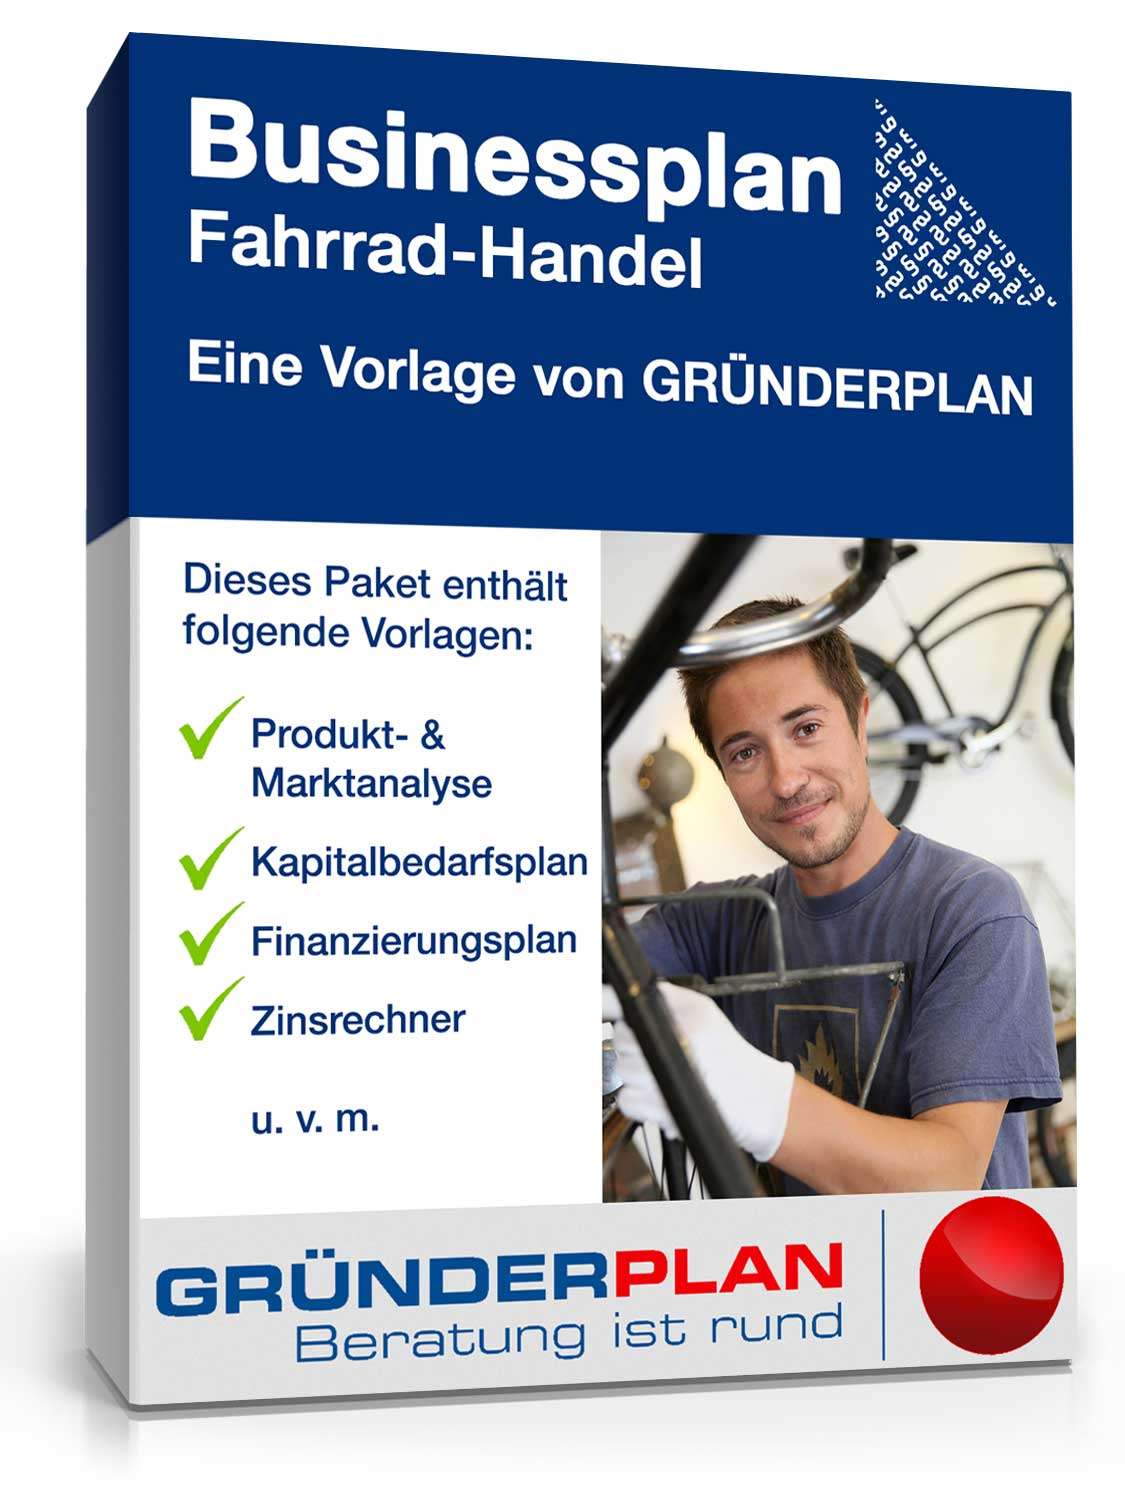 Hauptbild des Produkts: Businessplan Fahrrad-Handel von Gründerplan